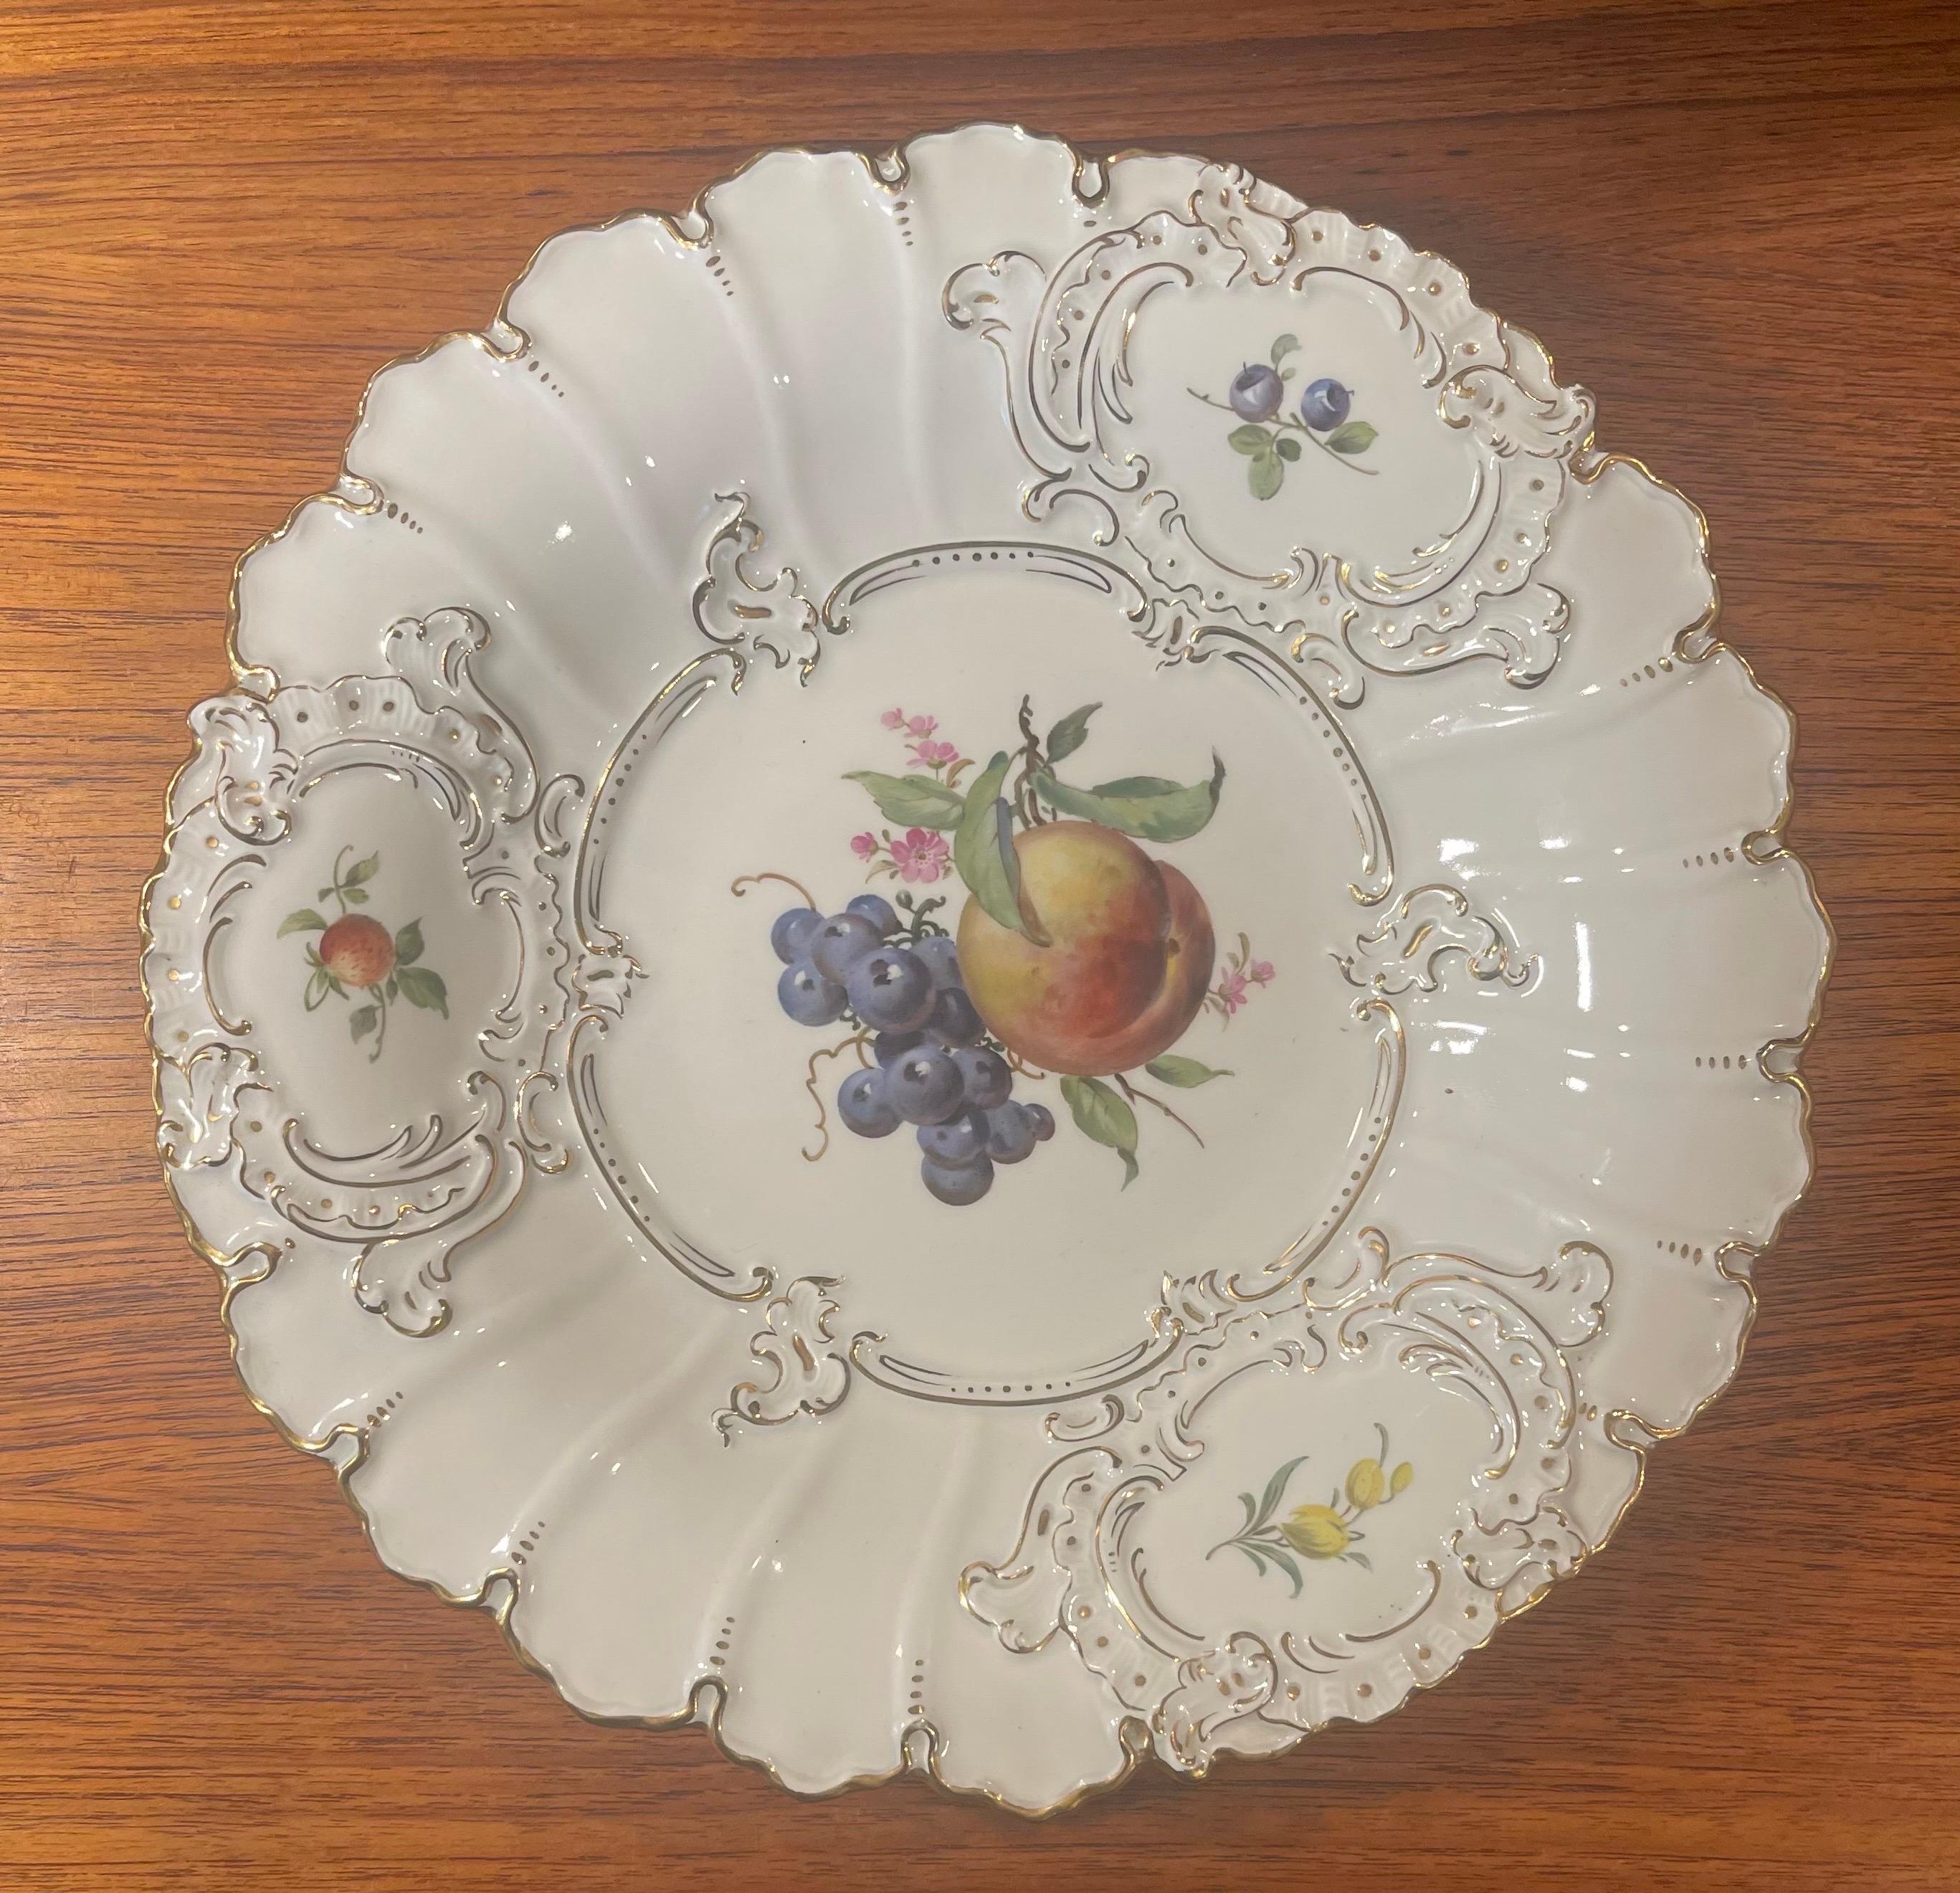 Bol de cabinet en porcelaine antique de Meissen d'Allemagne, vers 1900. La pièce est en très bon état, sans éclats ni fissures, et ses couleurs sont claires et vibrantes. Le bol mesure 12 